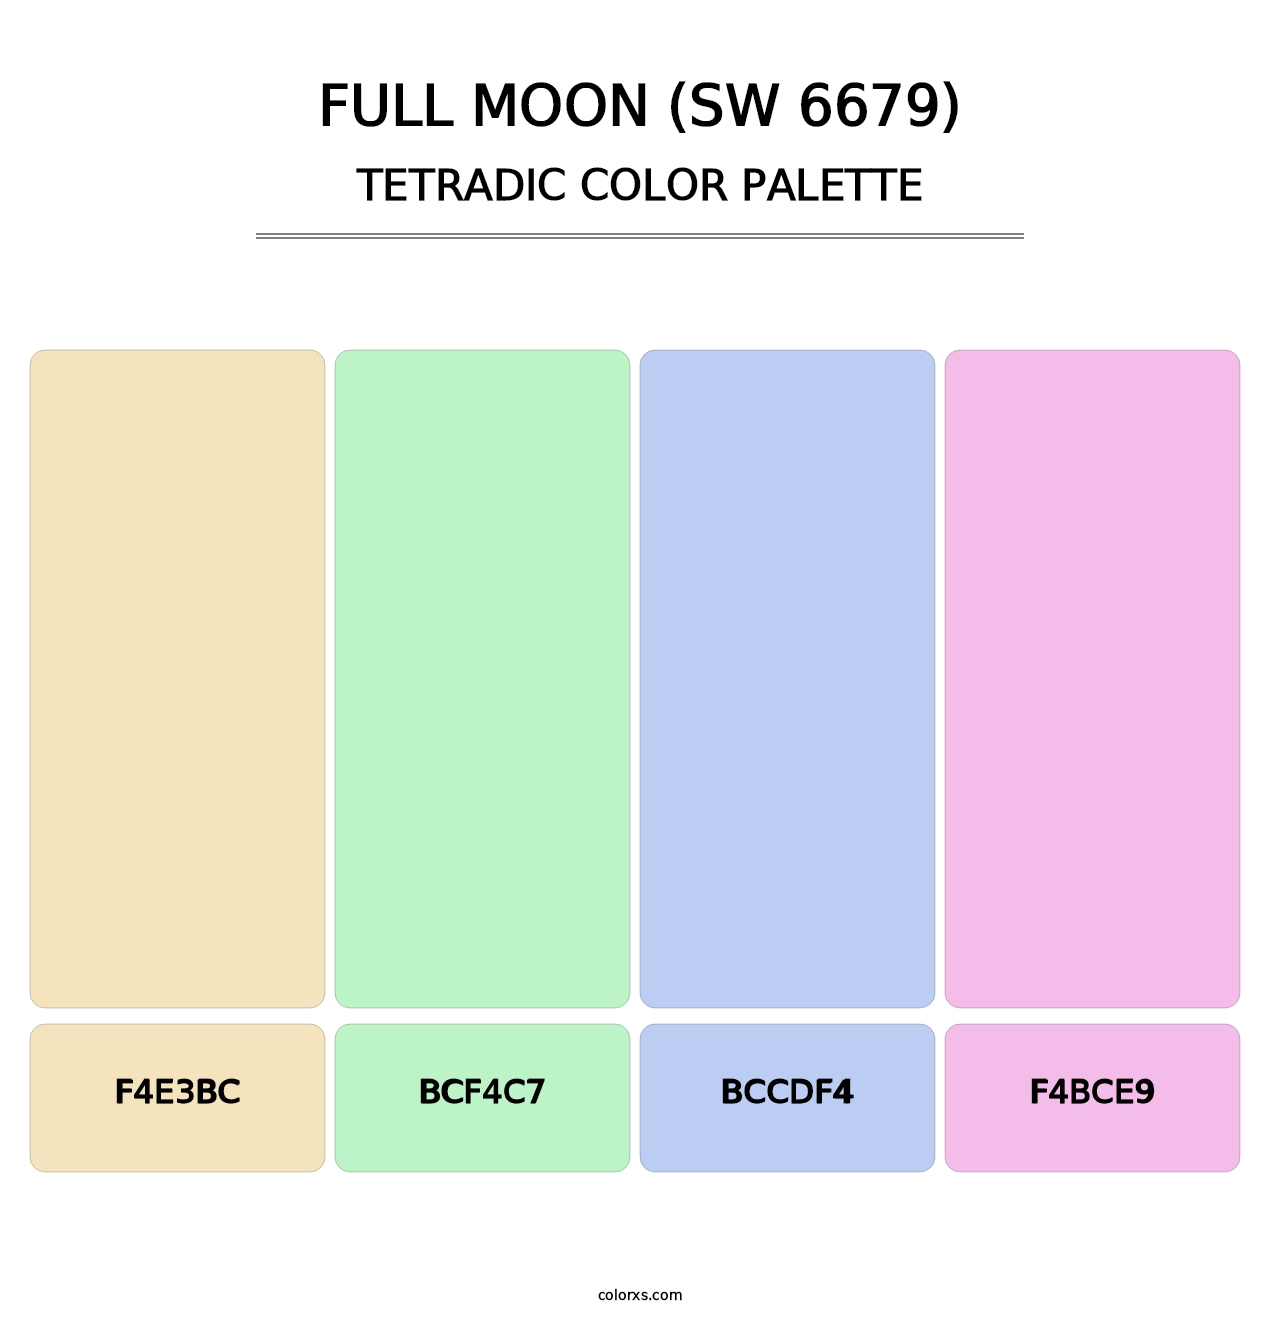 Full Moon (SW 6679) - Tetradic Color Palette